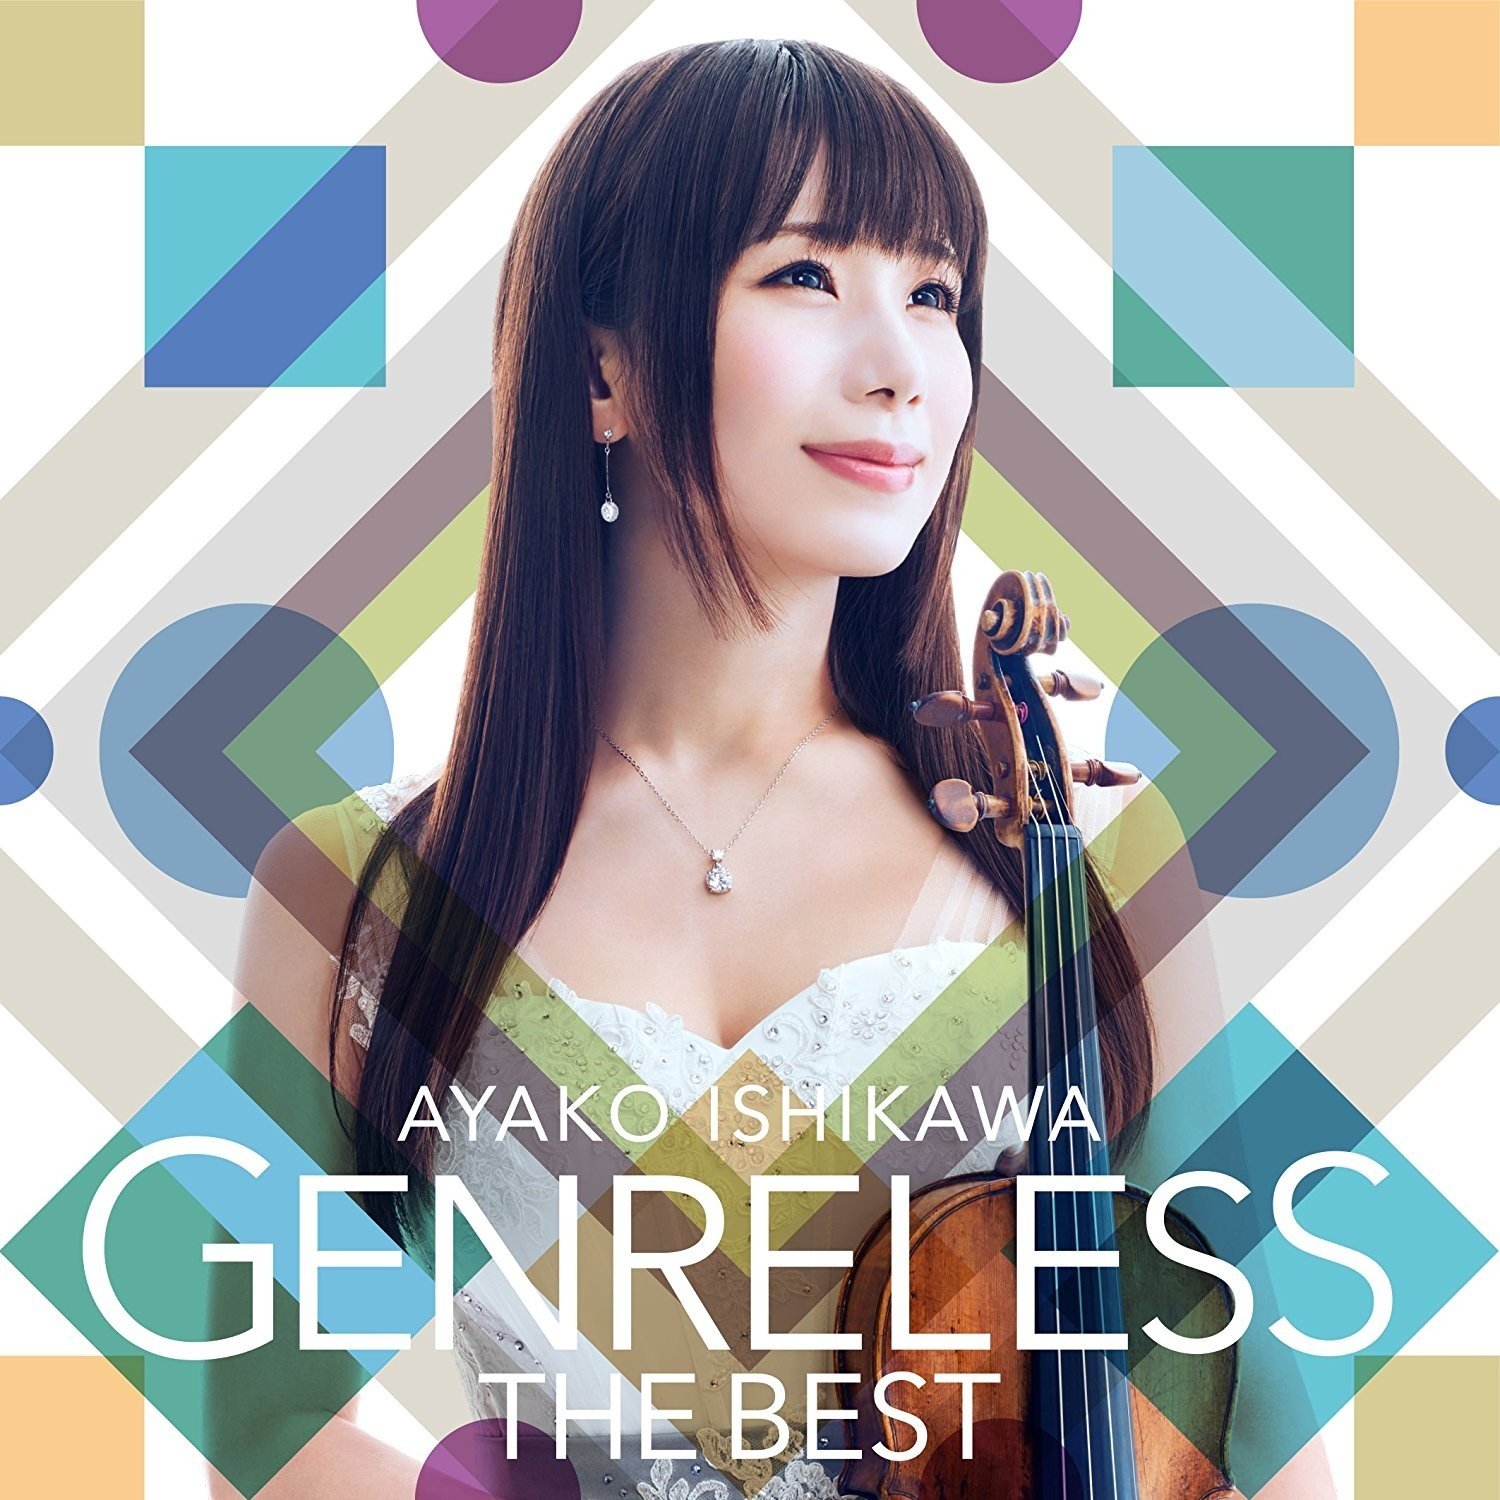 石川綾子 (Ayako Ishikawa) – Genreless THE BEST (ジャンルレス THE BEST) [FLAC / 24bit Lossless] [2017.09.13]